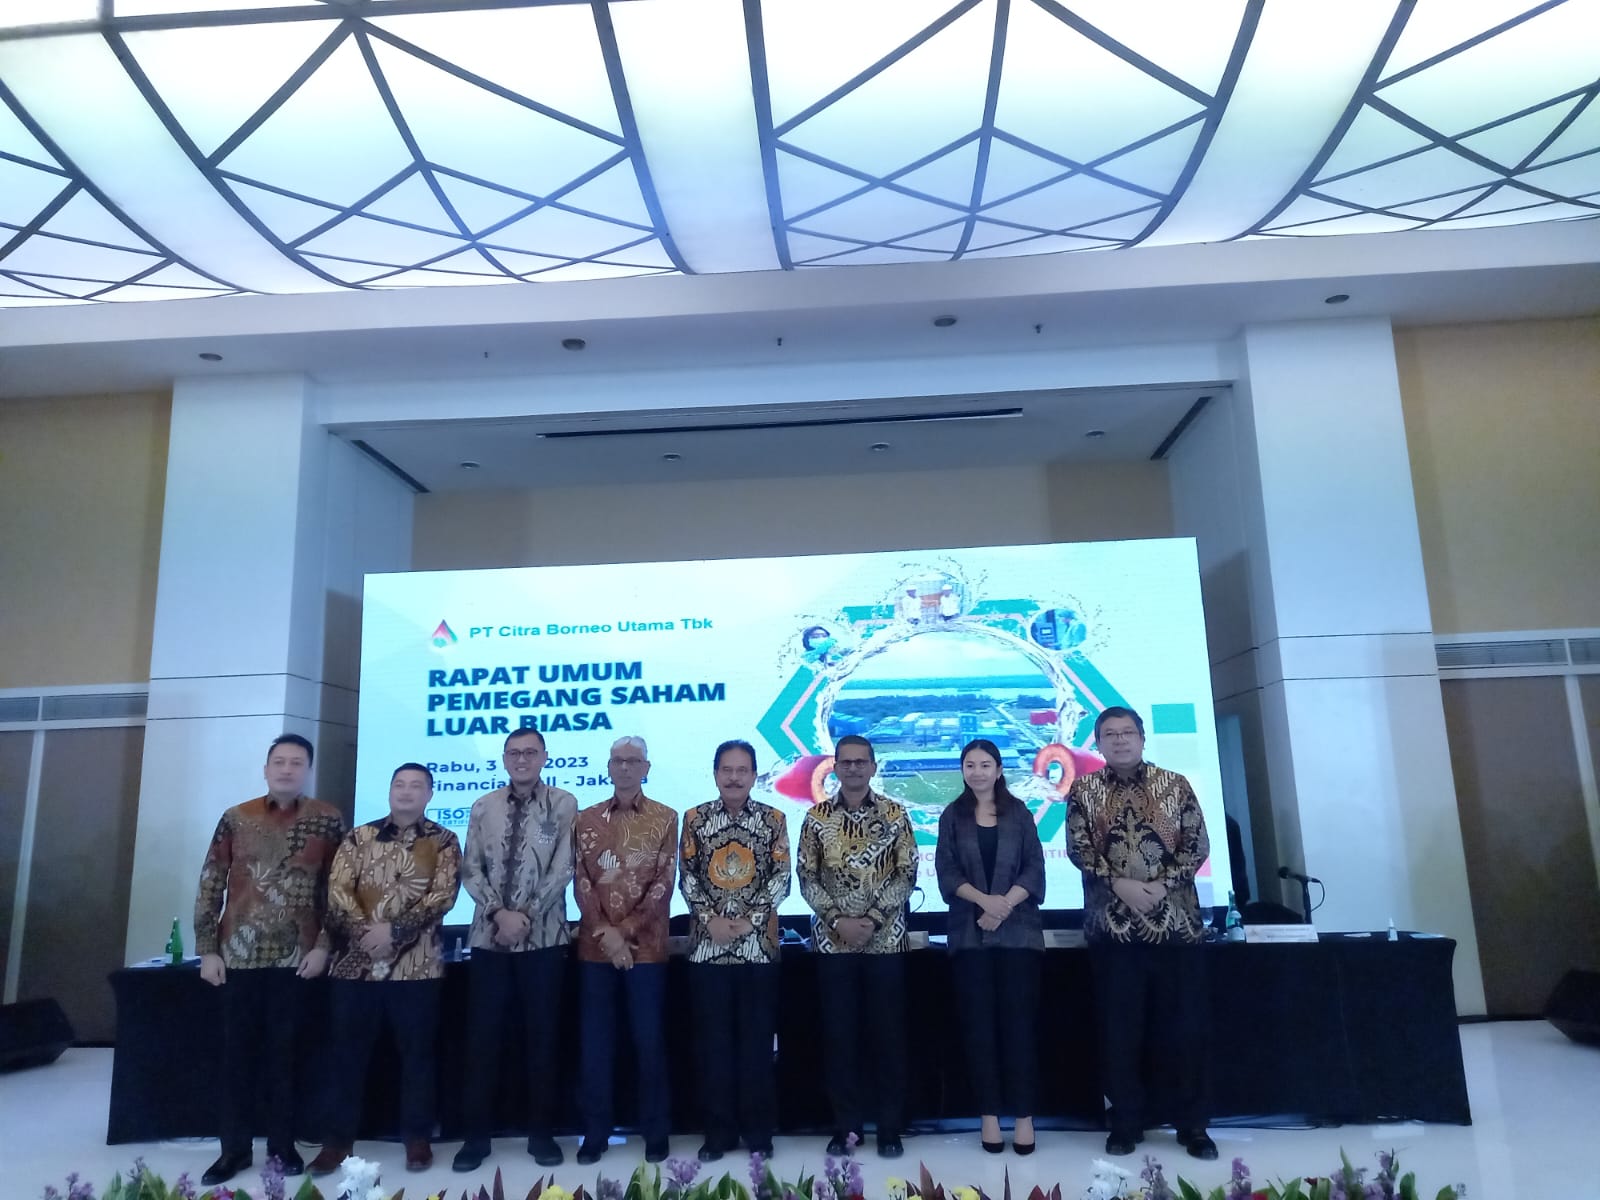 Ubah Jajaran Direksi dan Komisaris, Citra Borneo (CBUT) Bakal Lebih Ekspansif